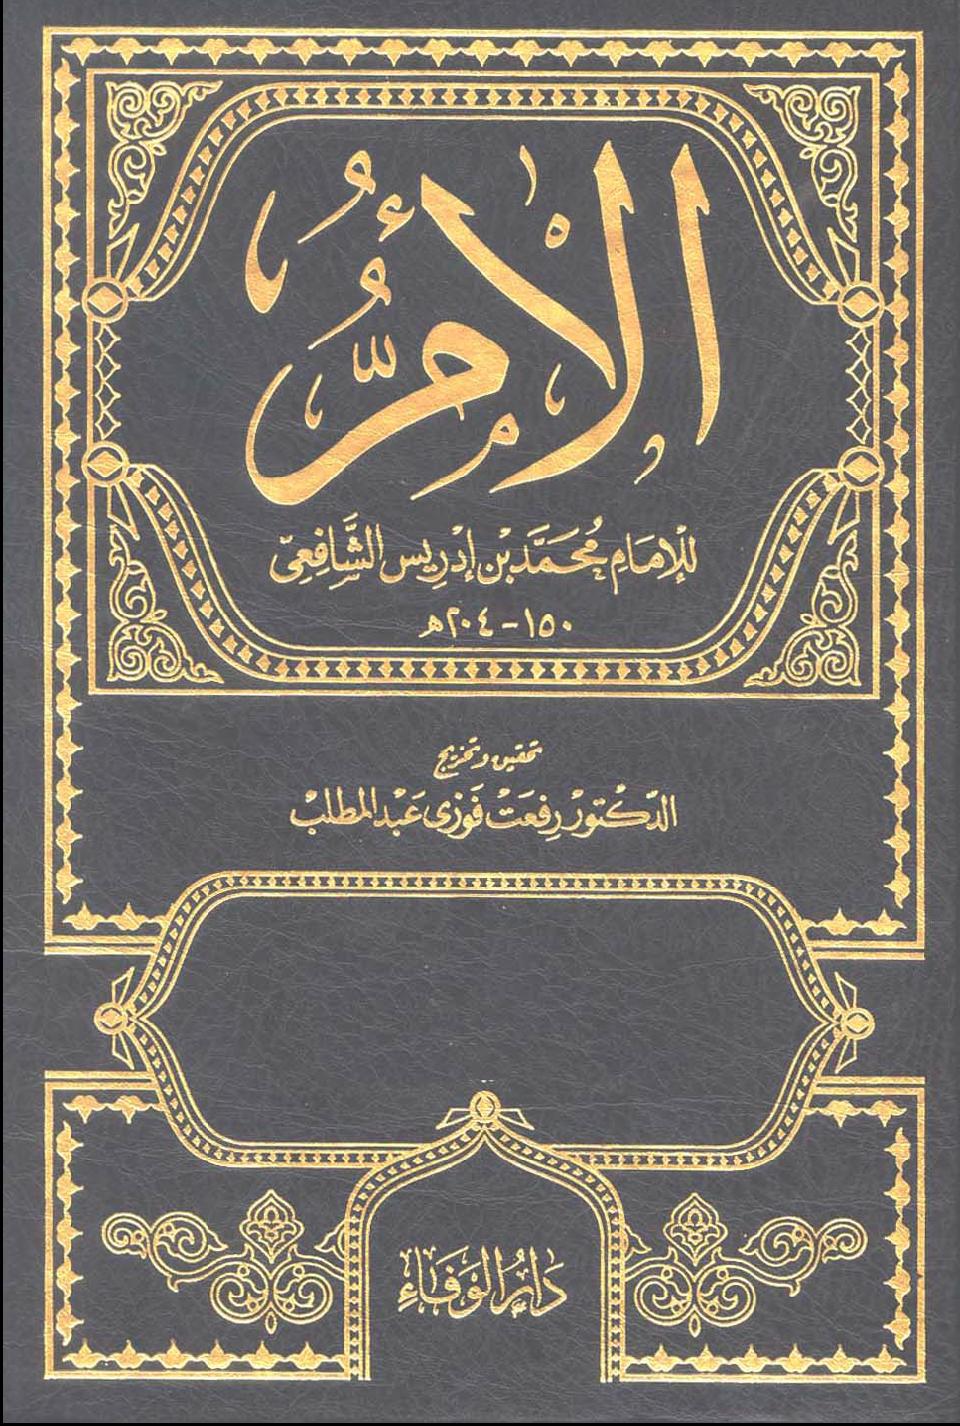 الأم -  الجزء السادس و السابع - الإمام الشافعي أبي عبد الله محمد بن إدريس